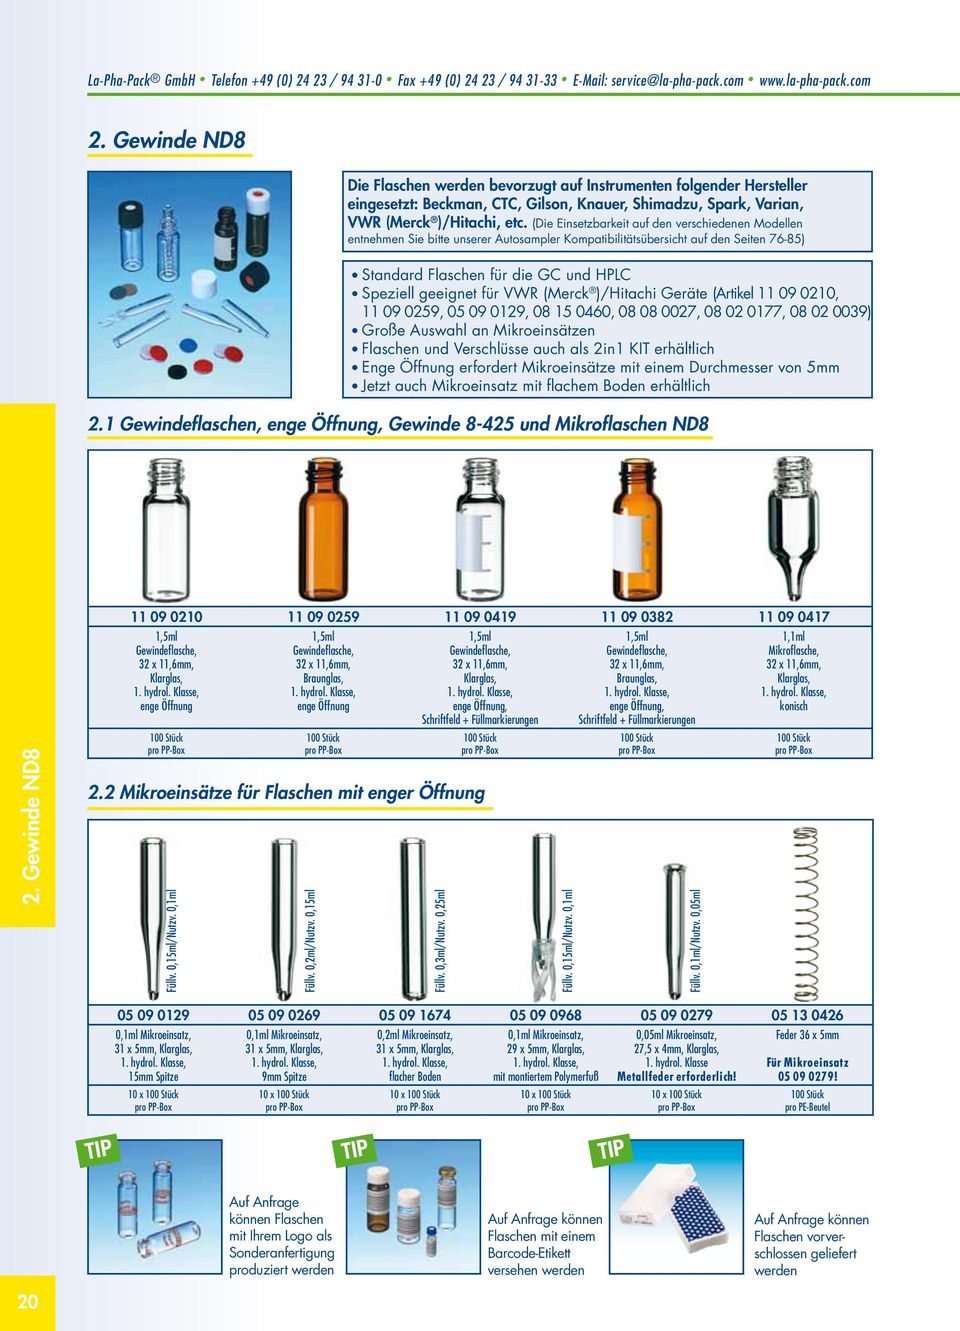 VWR (Merck )/Hitachi Geräte (Artikel 11 09 0210, 11 09 0259, 05 09 0129, 08 15 0460, 08 08 0027, 08 02 0177, 08 02 0039) Große Auswahl an Mikroeinsätzen Flaschen und Verschlüsse auch als 2in1 KIT